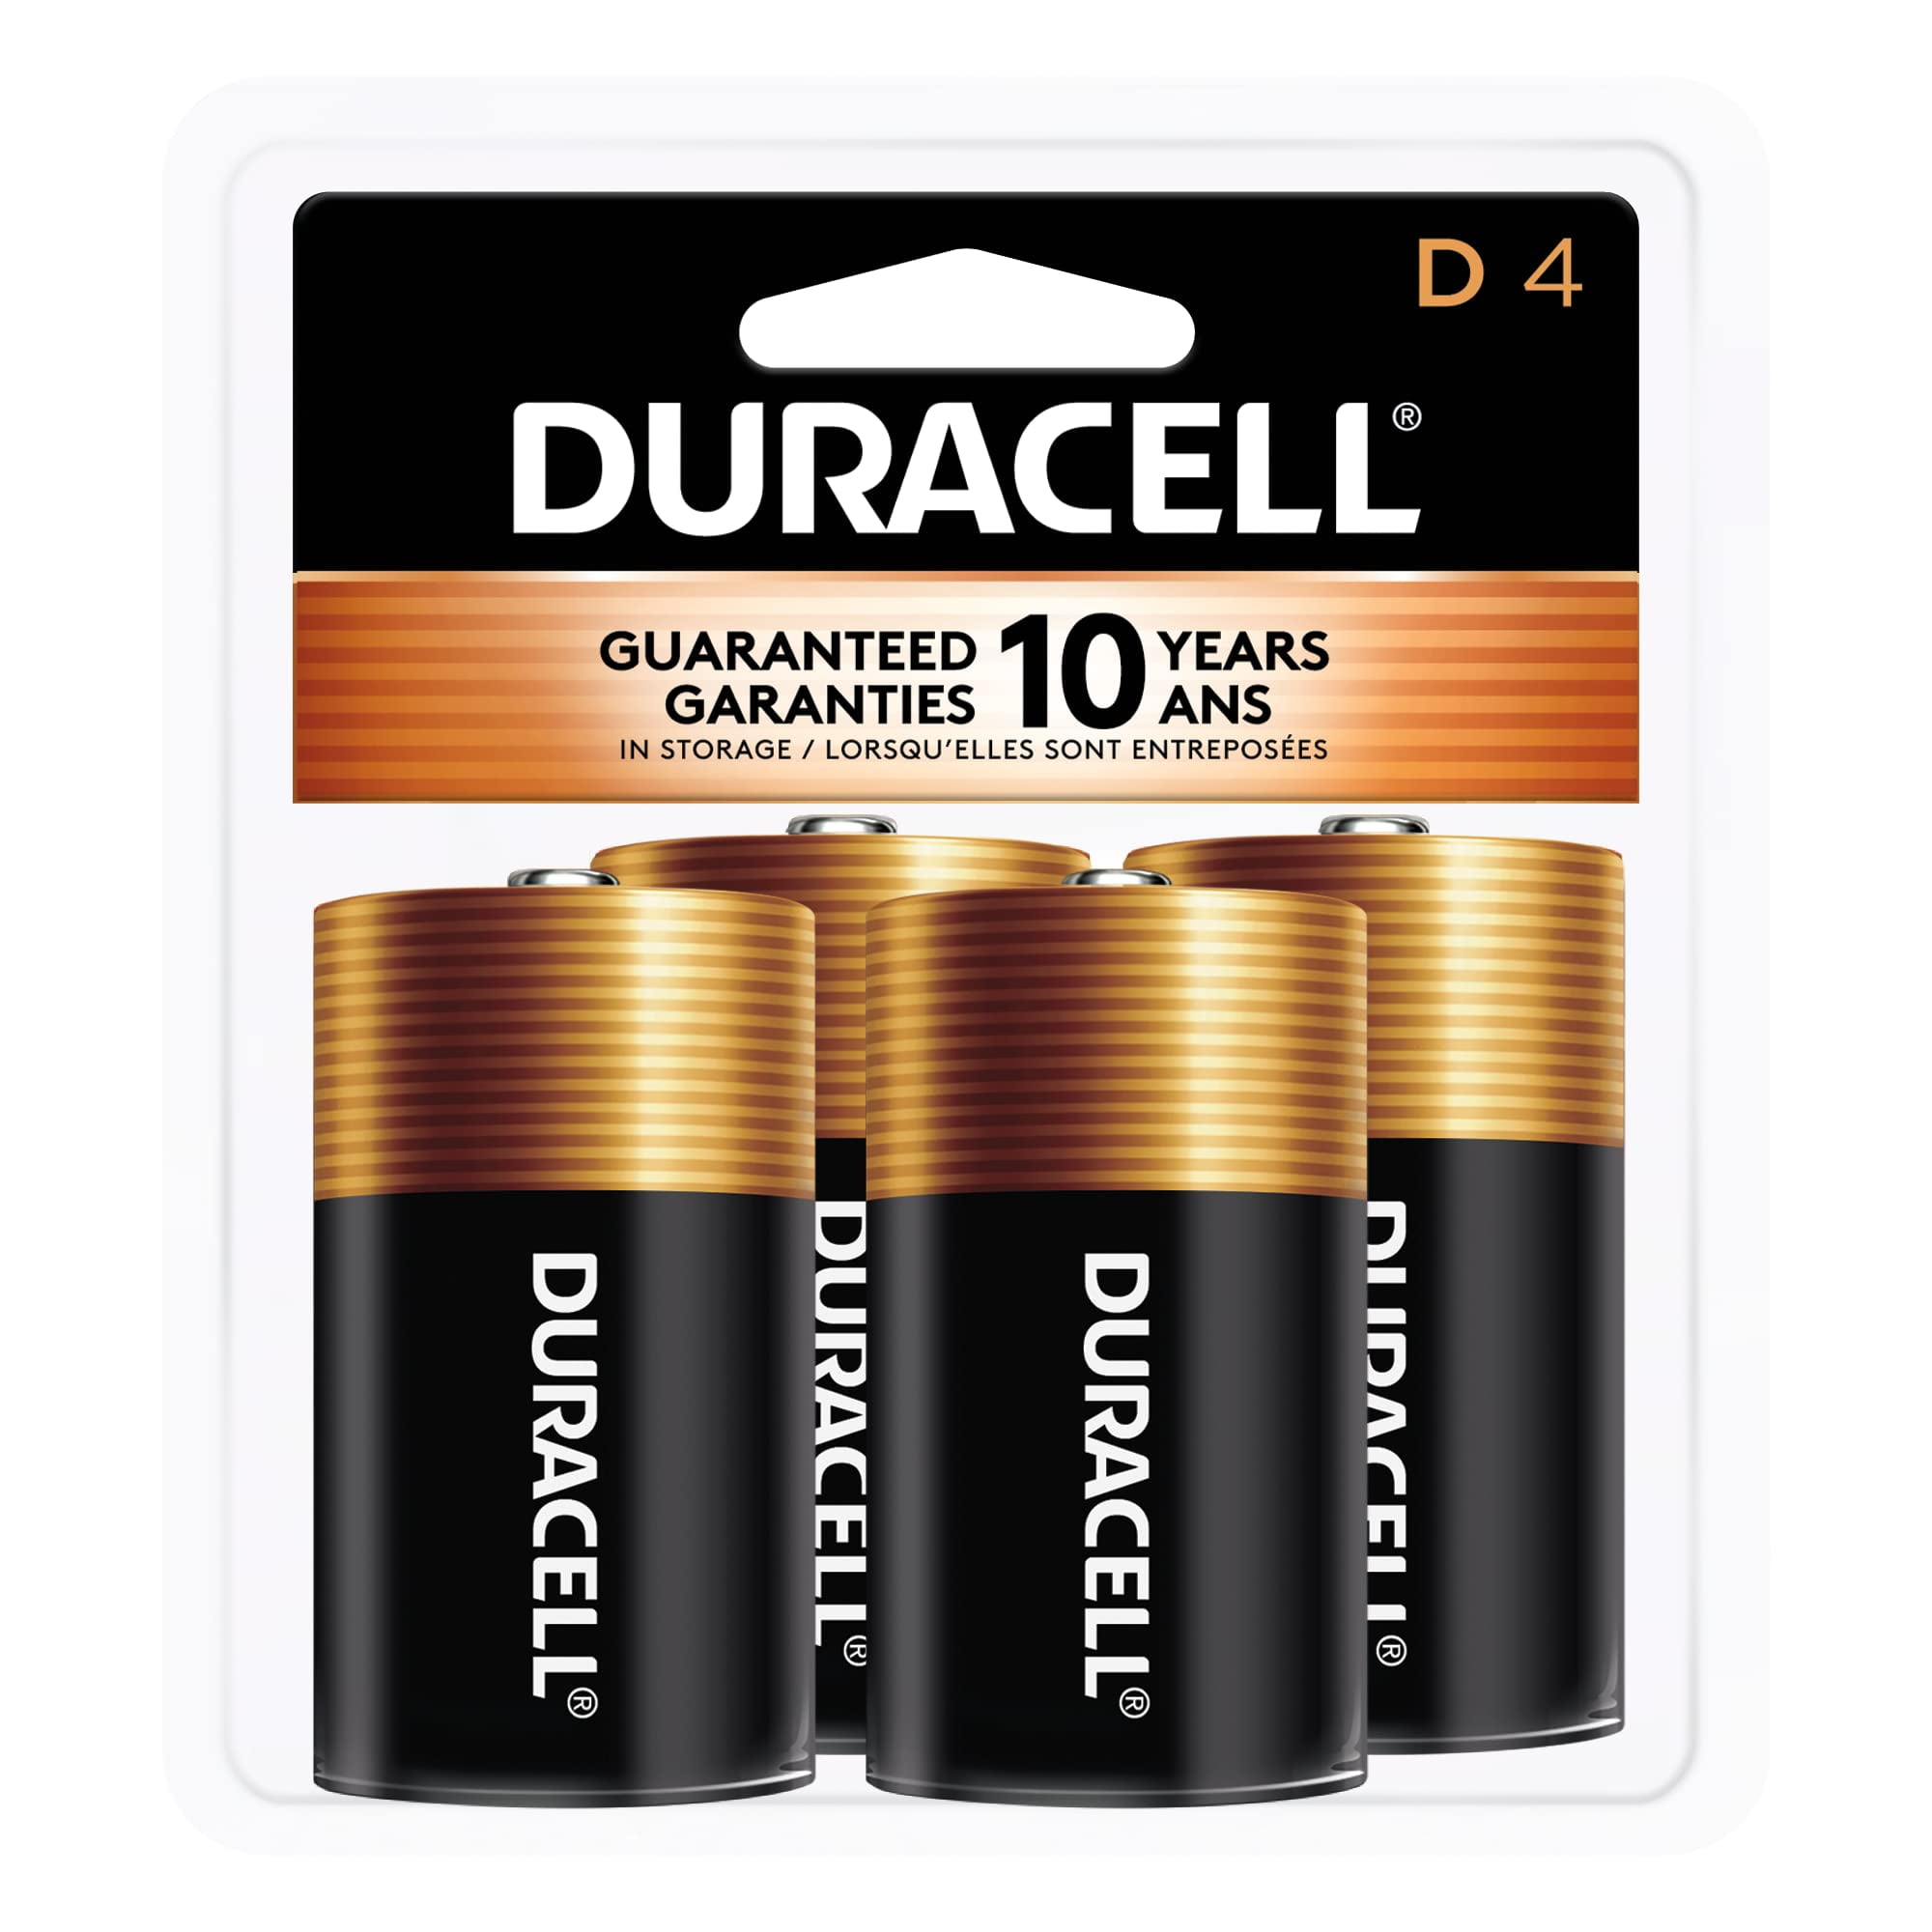 Duracell Batteries, Alkaline, D, 4 Pack - 4 batteries